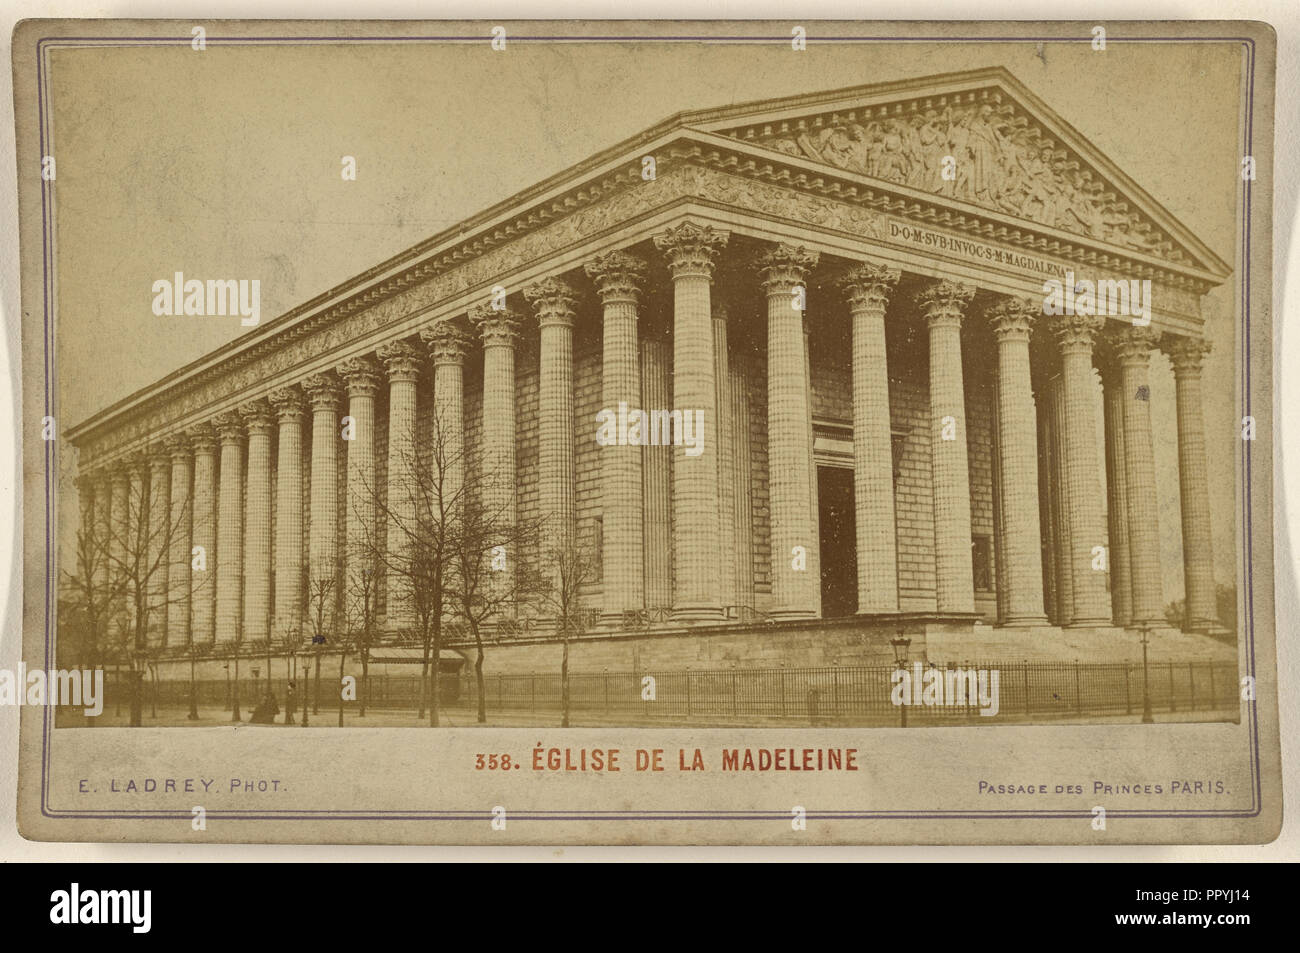 Eglise de la Madeleine; Ernest Ladrey, French, active Paris, France 1860s, 1870s; Albumen silver print Stock Photo